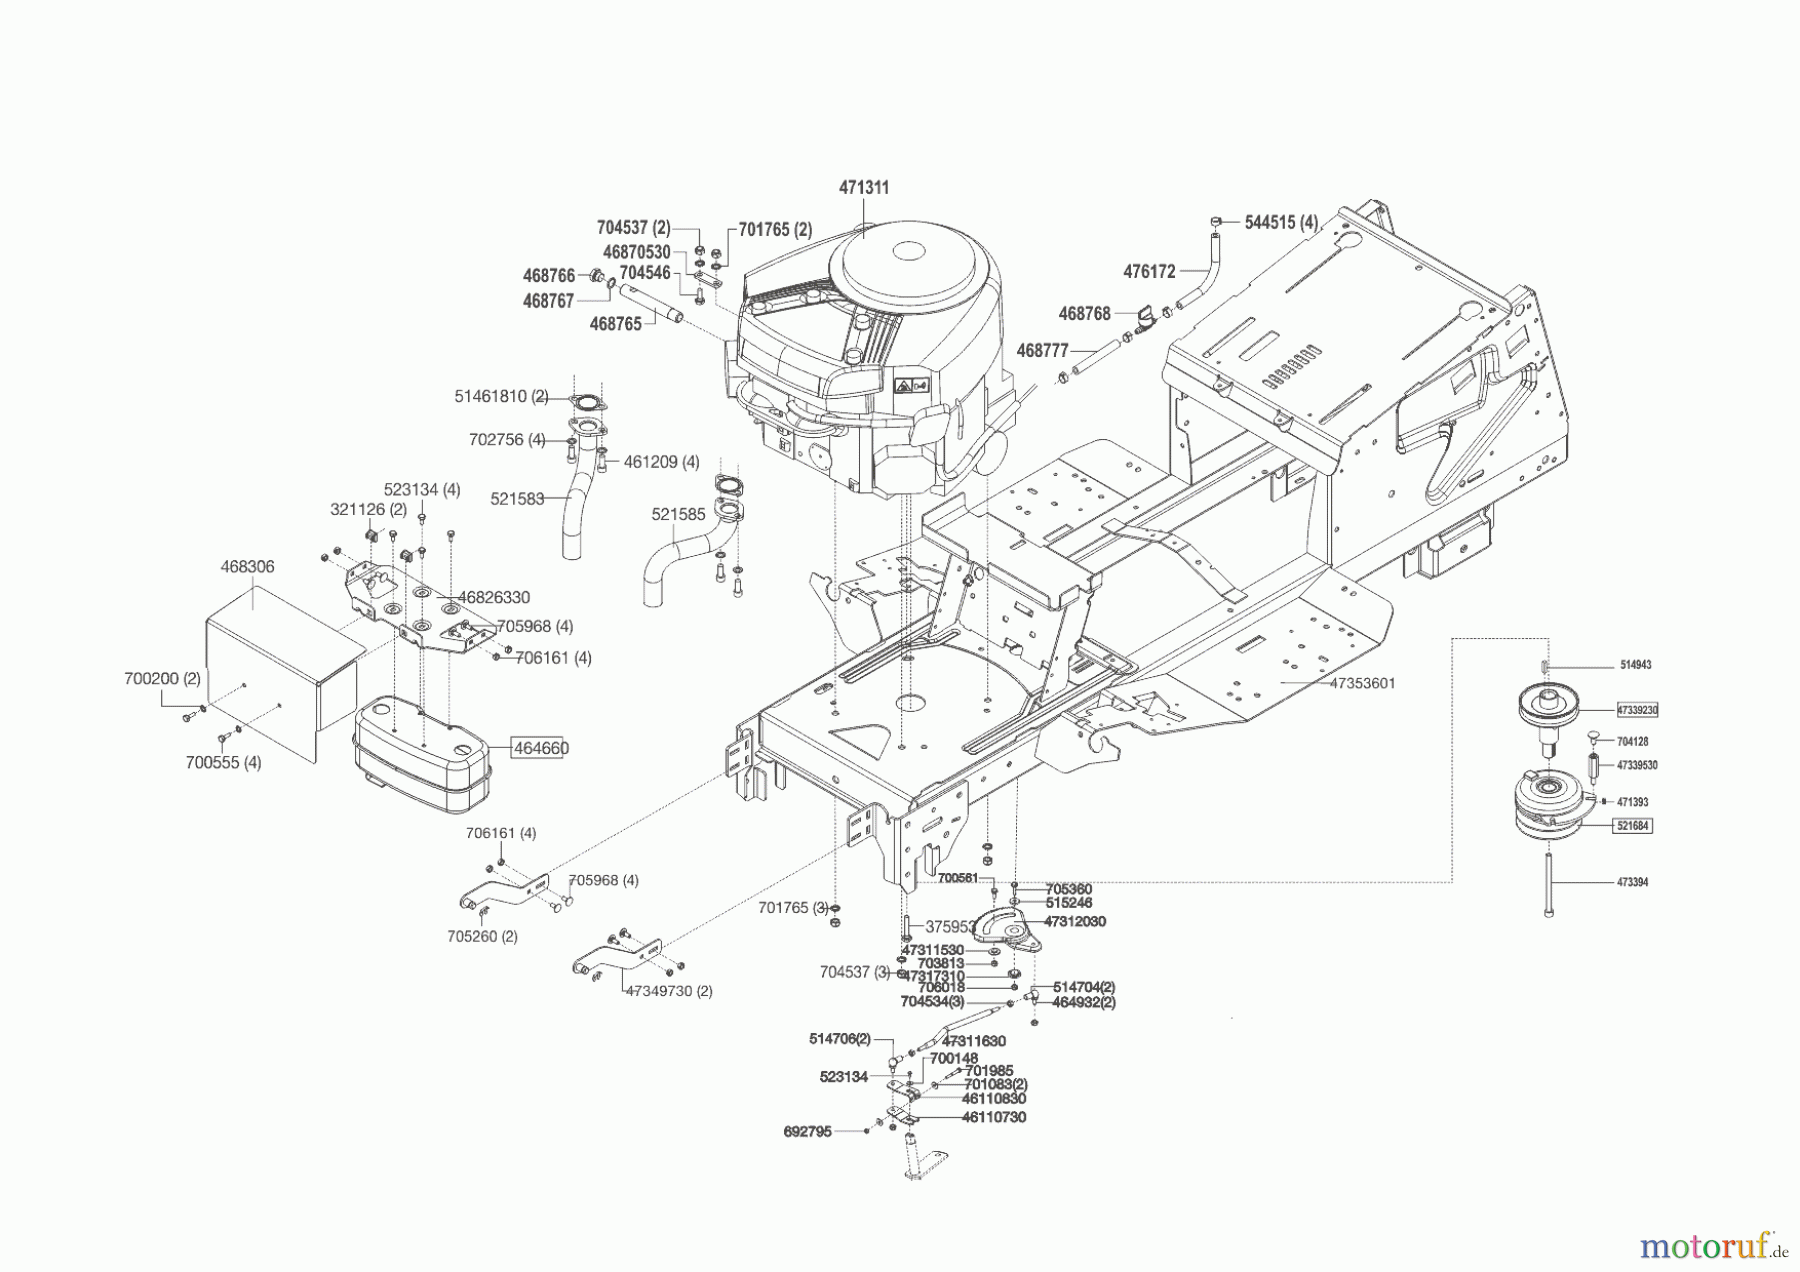  Powerline Gartentechnik Rasentraktor T 16-105.4 HD V2  09/2014 - 05/2016 Seite 2